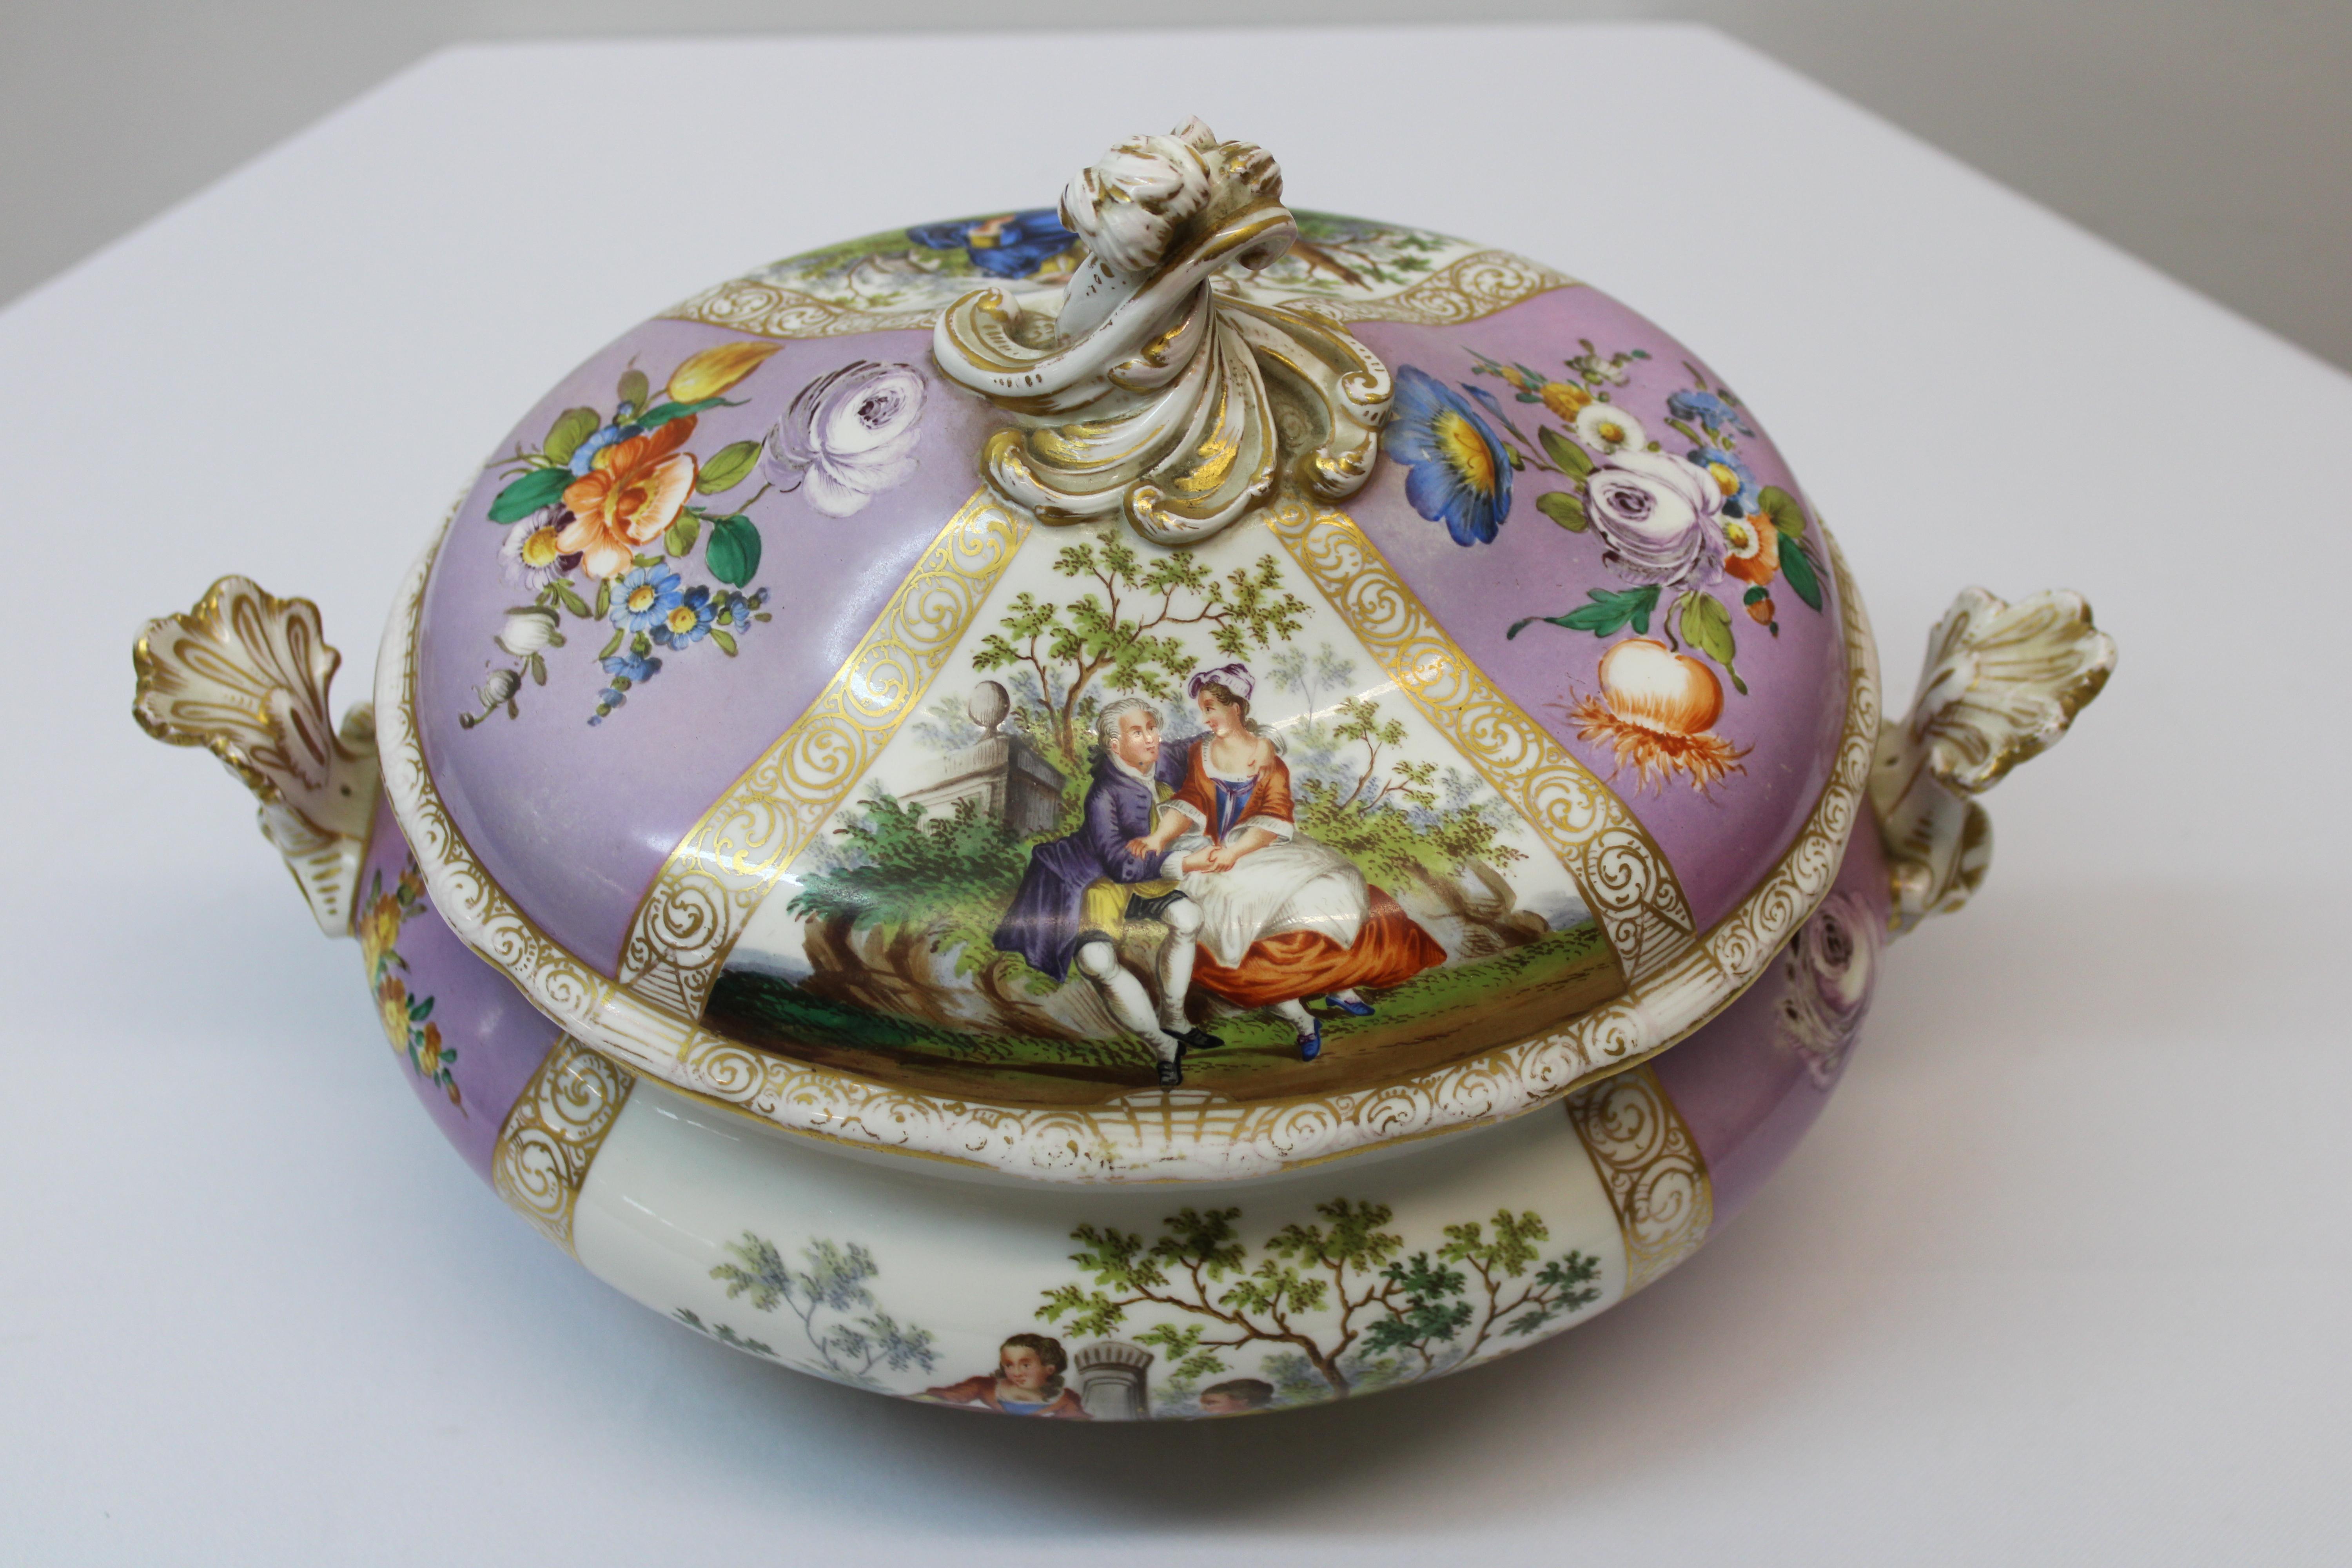 C. 19th century

Meissen porcelain beautiful soup tureen.